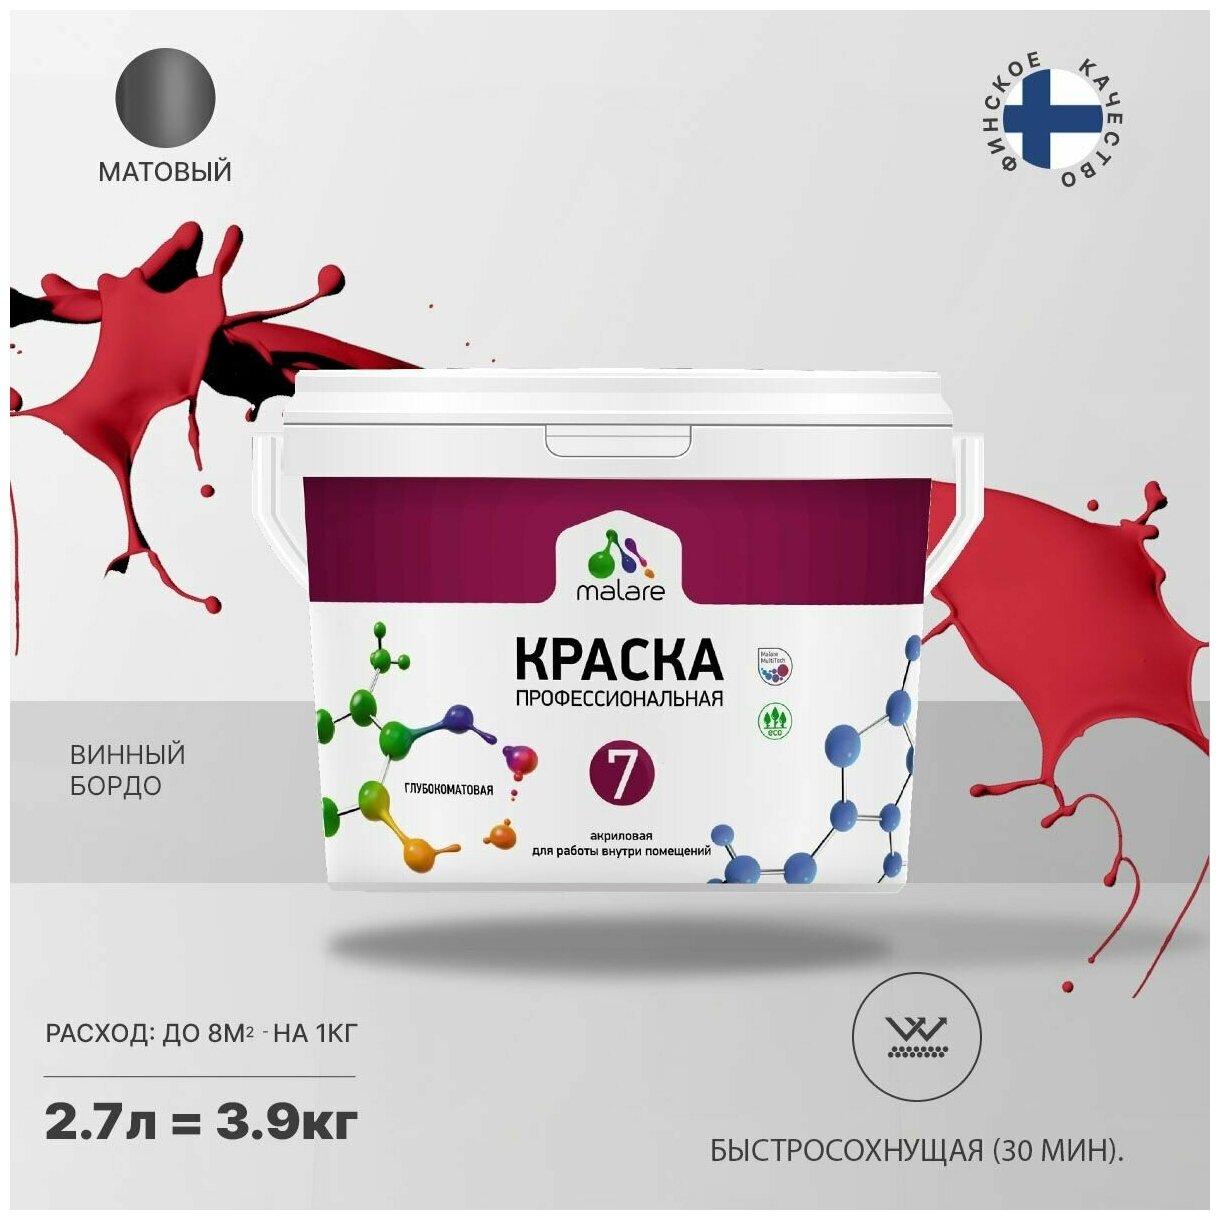 Краска Malare "Professional" Евро №7 для стен и обоев, быстросохнущая без запаха матовая, винный бордо, (2.7л - 3.9кг)